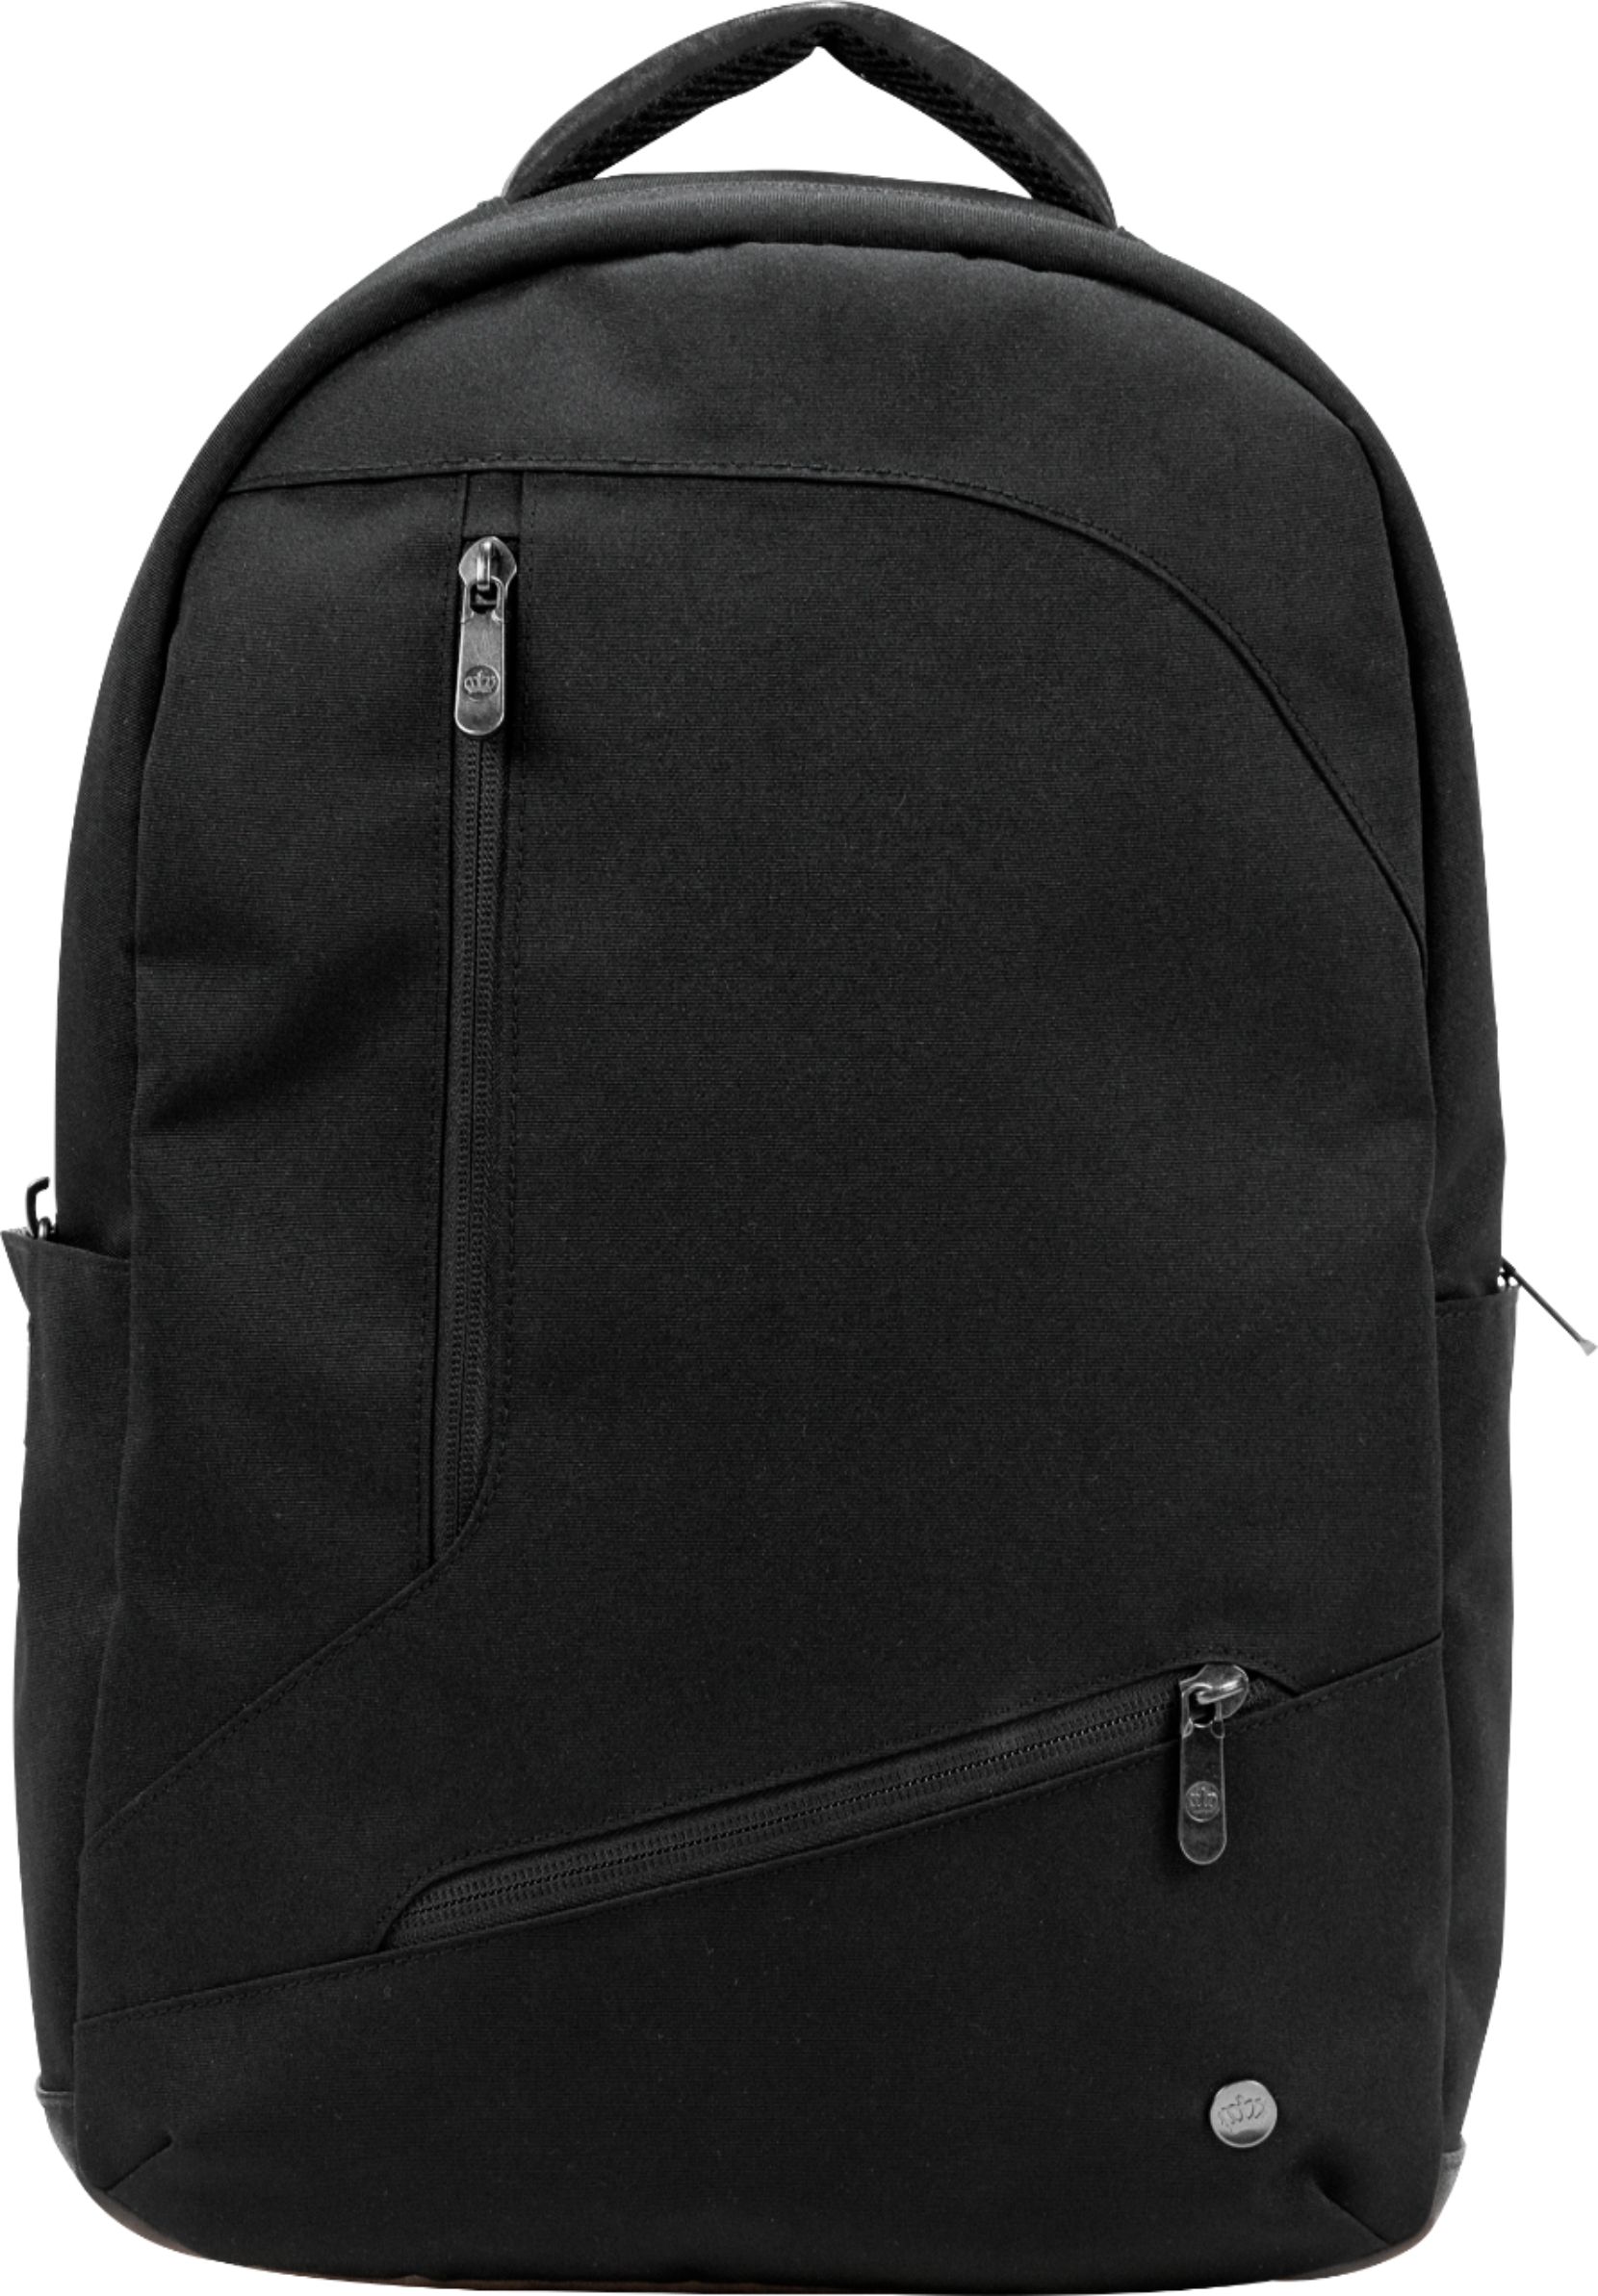 PKG - Backpack for 16 inch Laptop - Black - $64.99